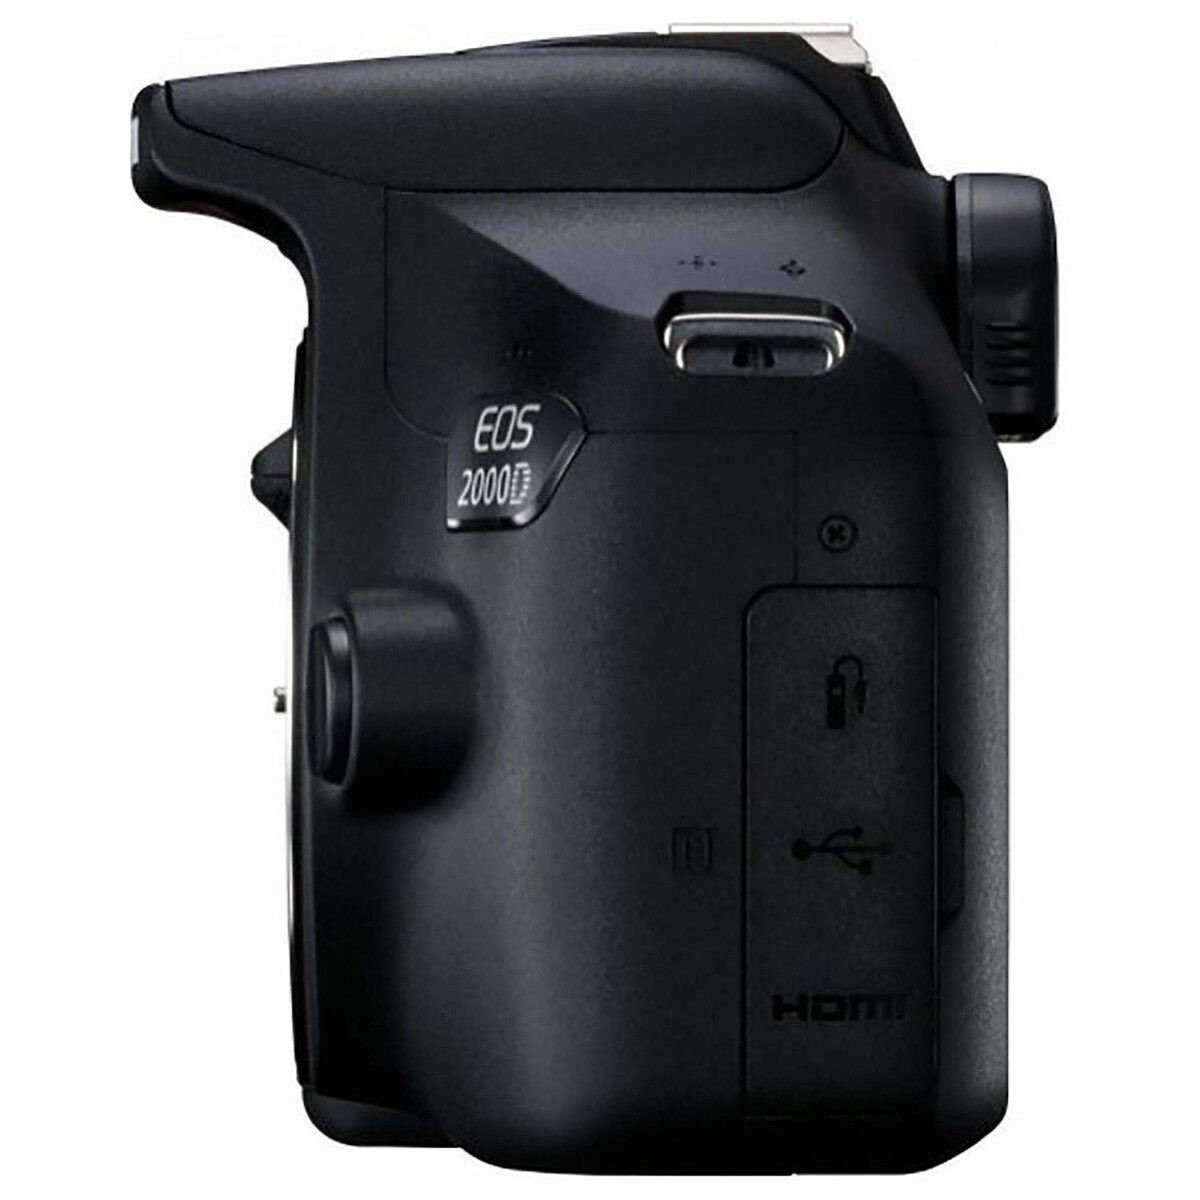 Canon DSLR EOS2000D 18-55 + EF50mm